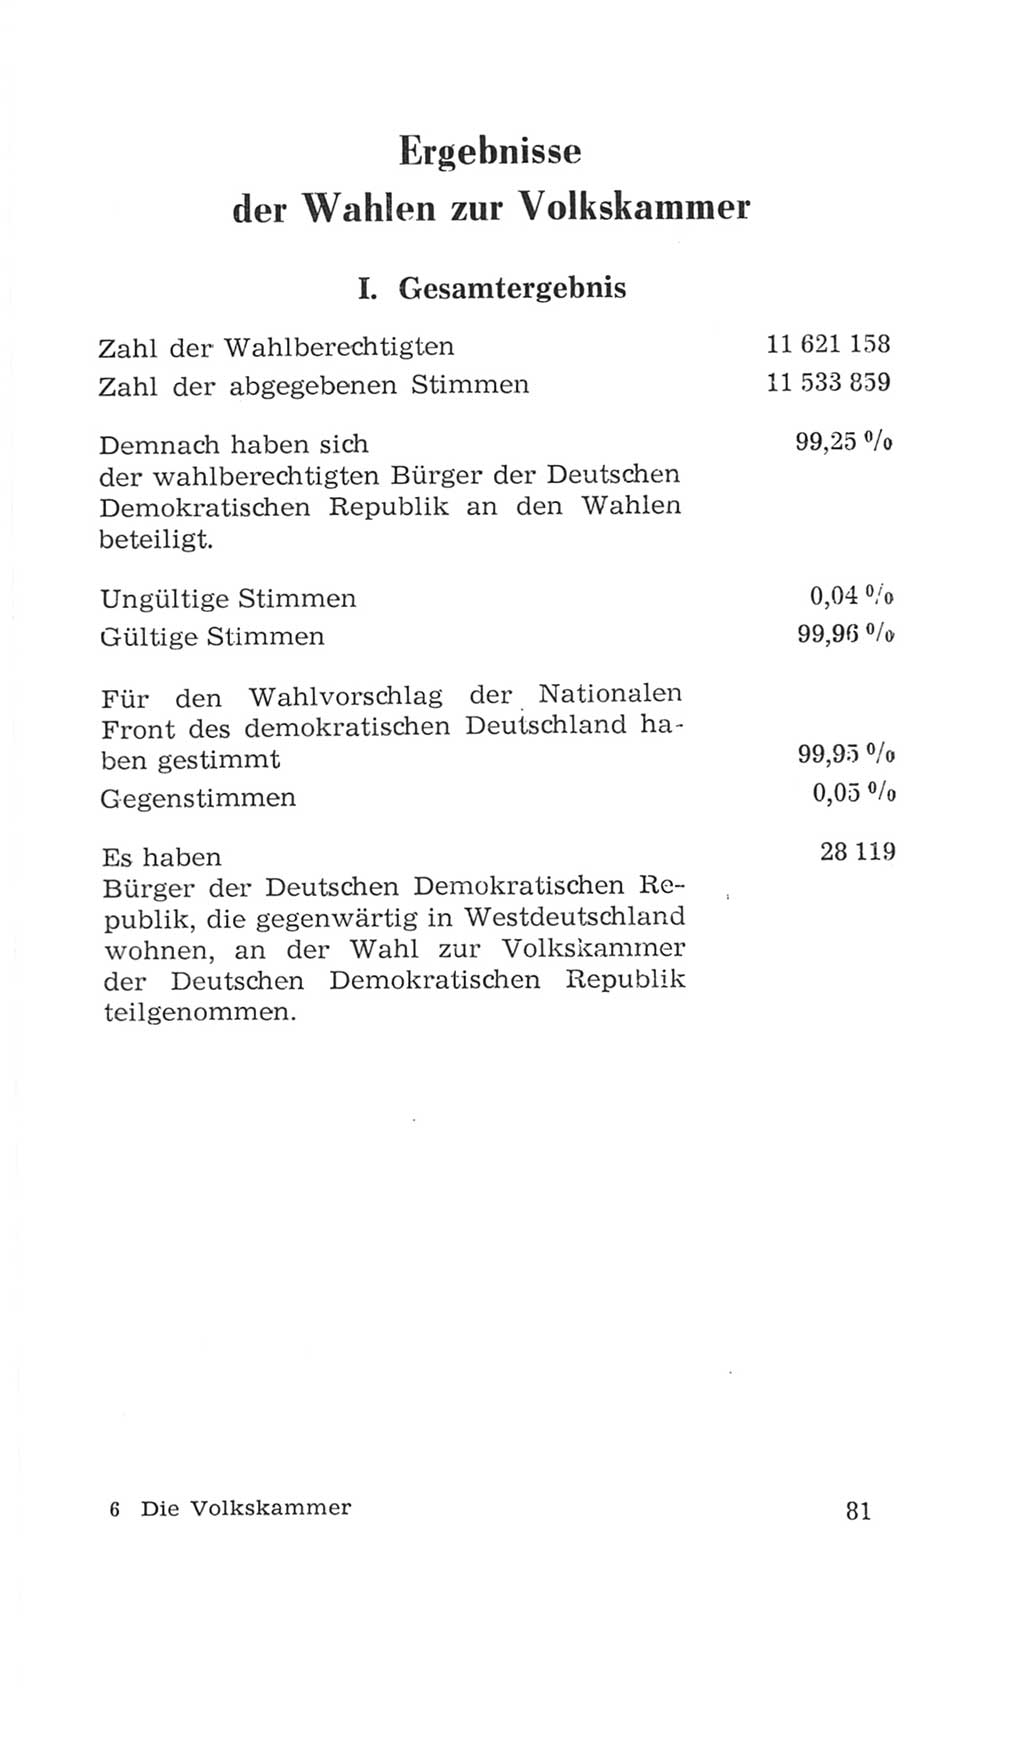 Volkskammer (VK) der Deutschen Demokratischen Republik (DDR), 4. Wahlperiode 1963-1967, Seite 81 (VK. DDR 4. WP. 1963-1967, S. 81)